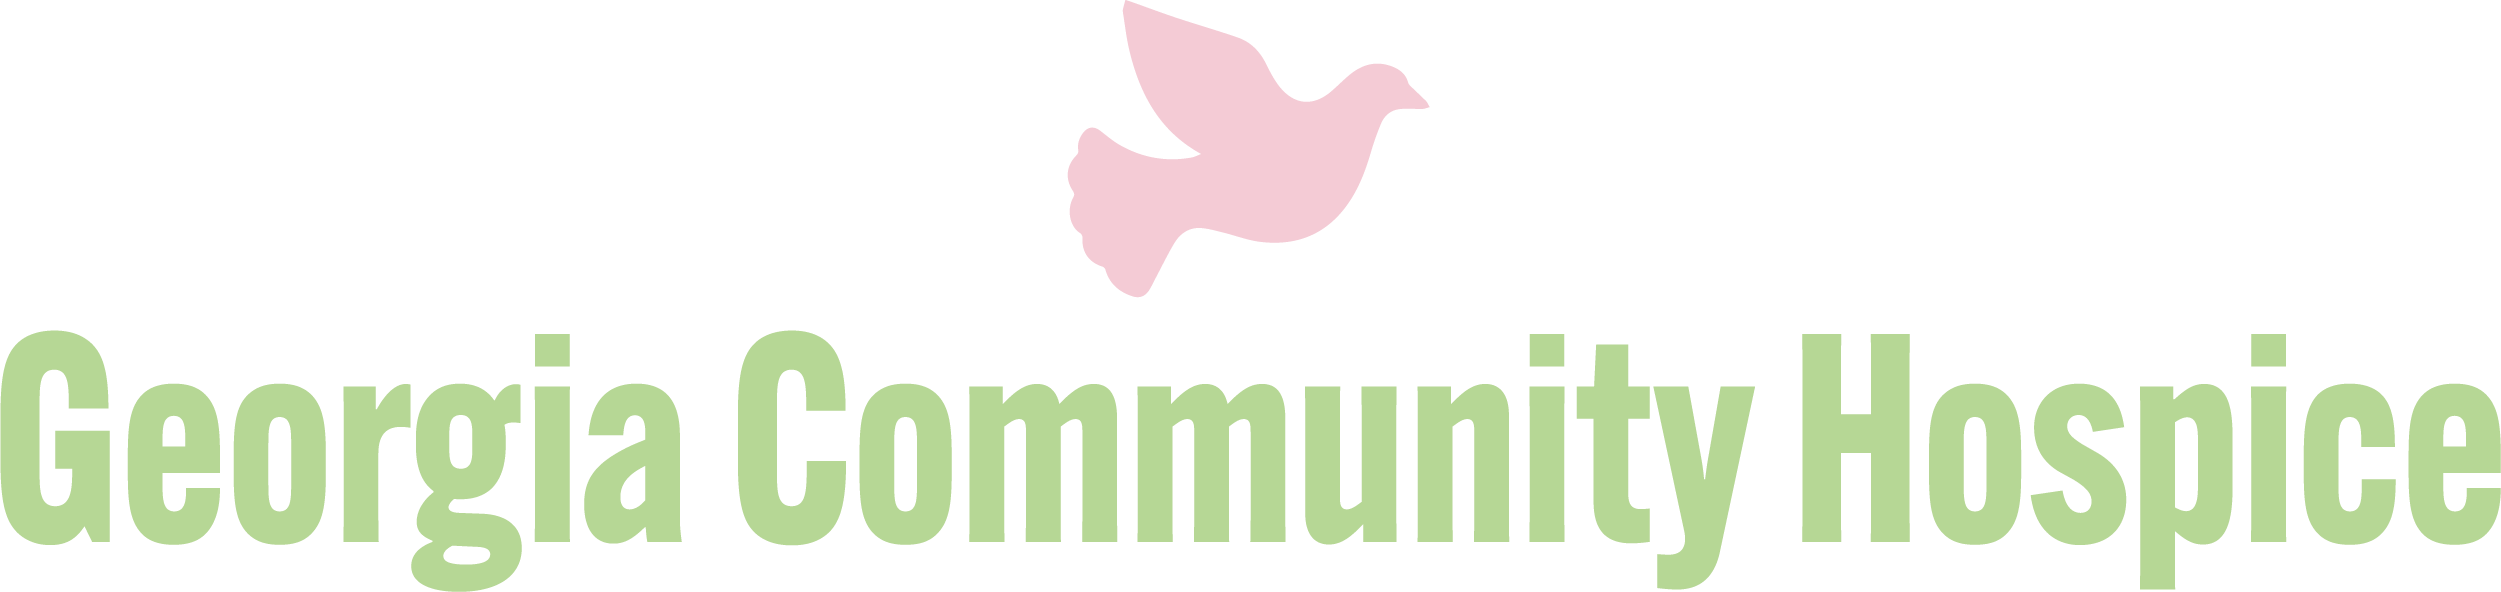 Georgia Community Hospice logo